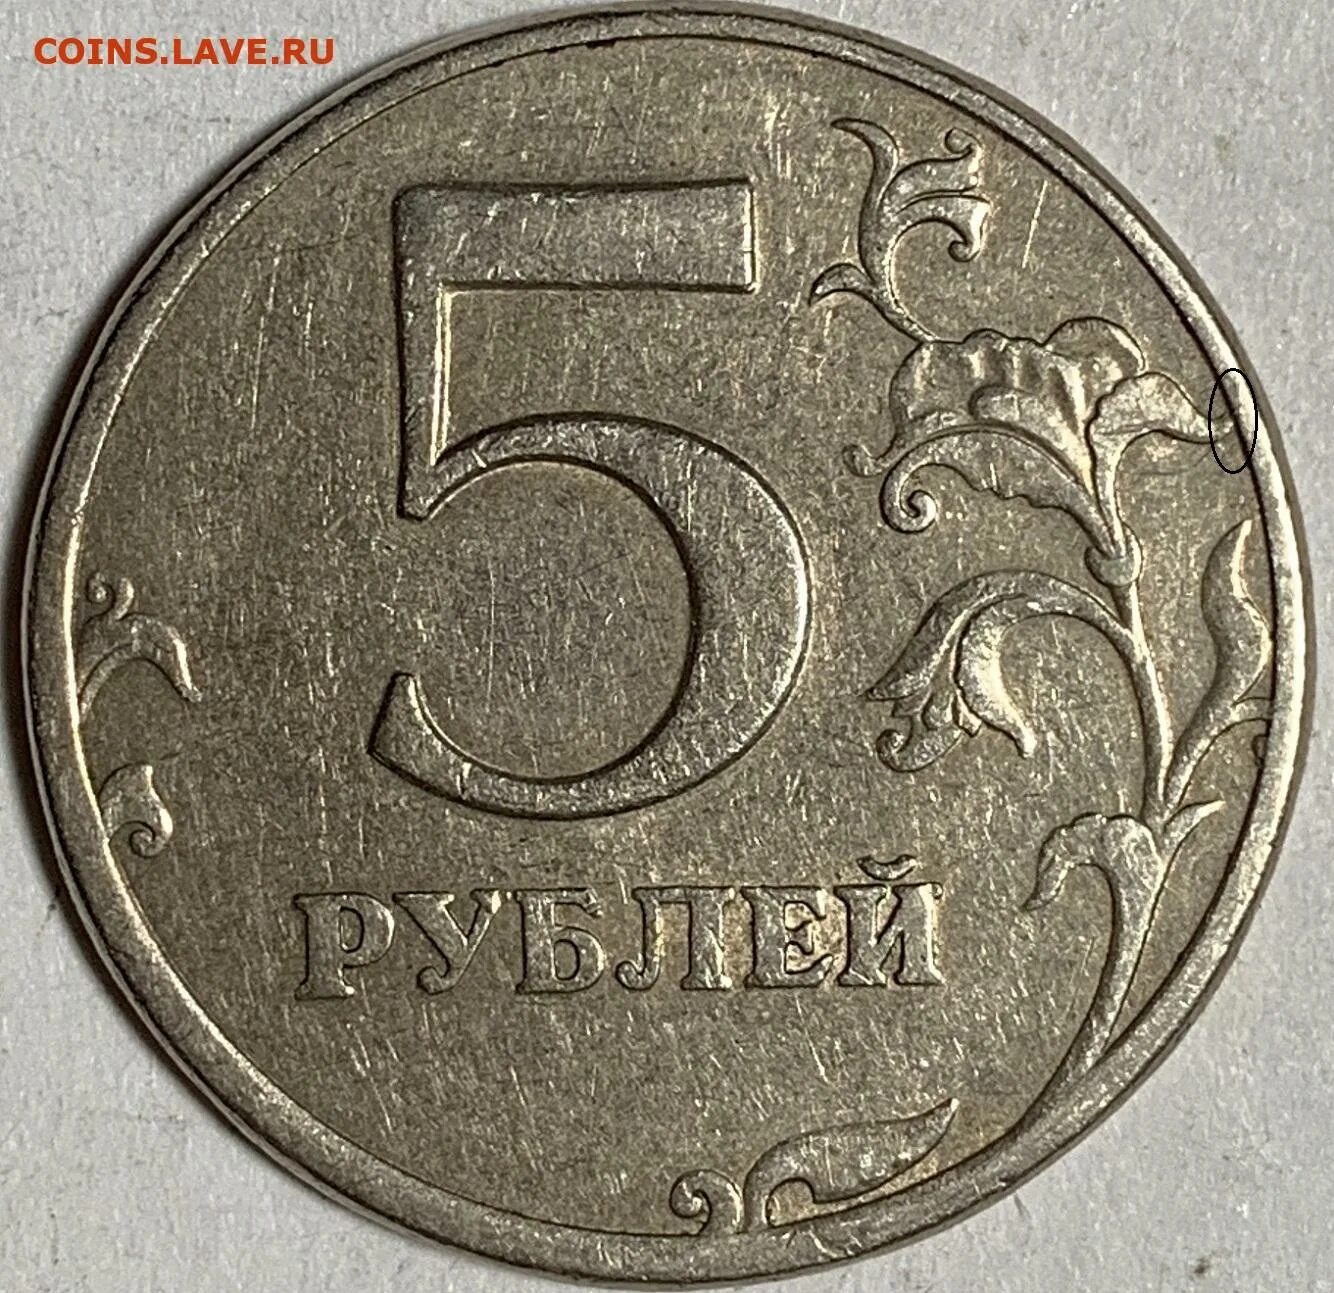 5 Рублей 1997 ММД. Редкие монеты 5 рублей 1997. 5 Рублей бумажные. 5 Рублей с двух сторон. Вышли 5 рублей